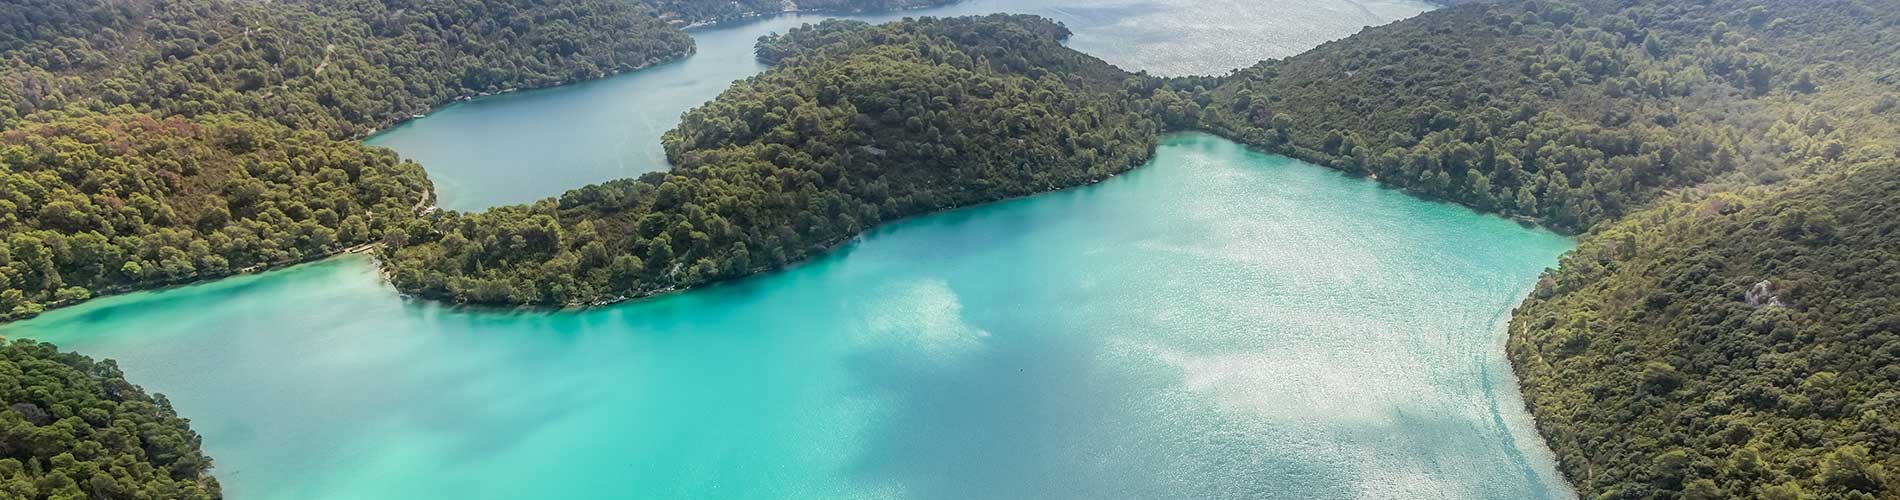 Mljet Island Lakes Croatia Holidays.jpg